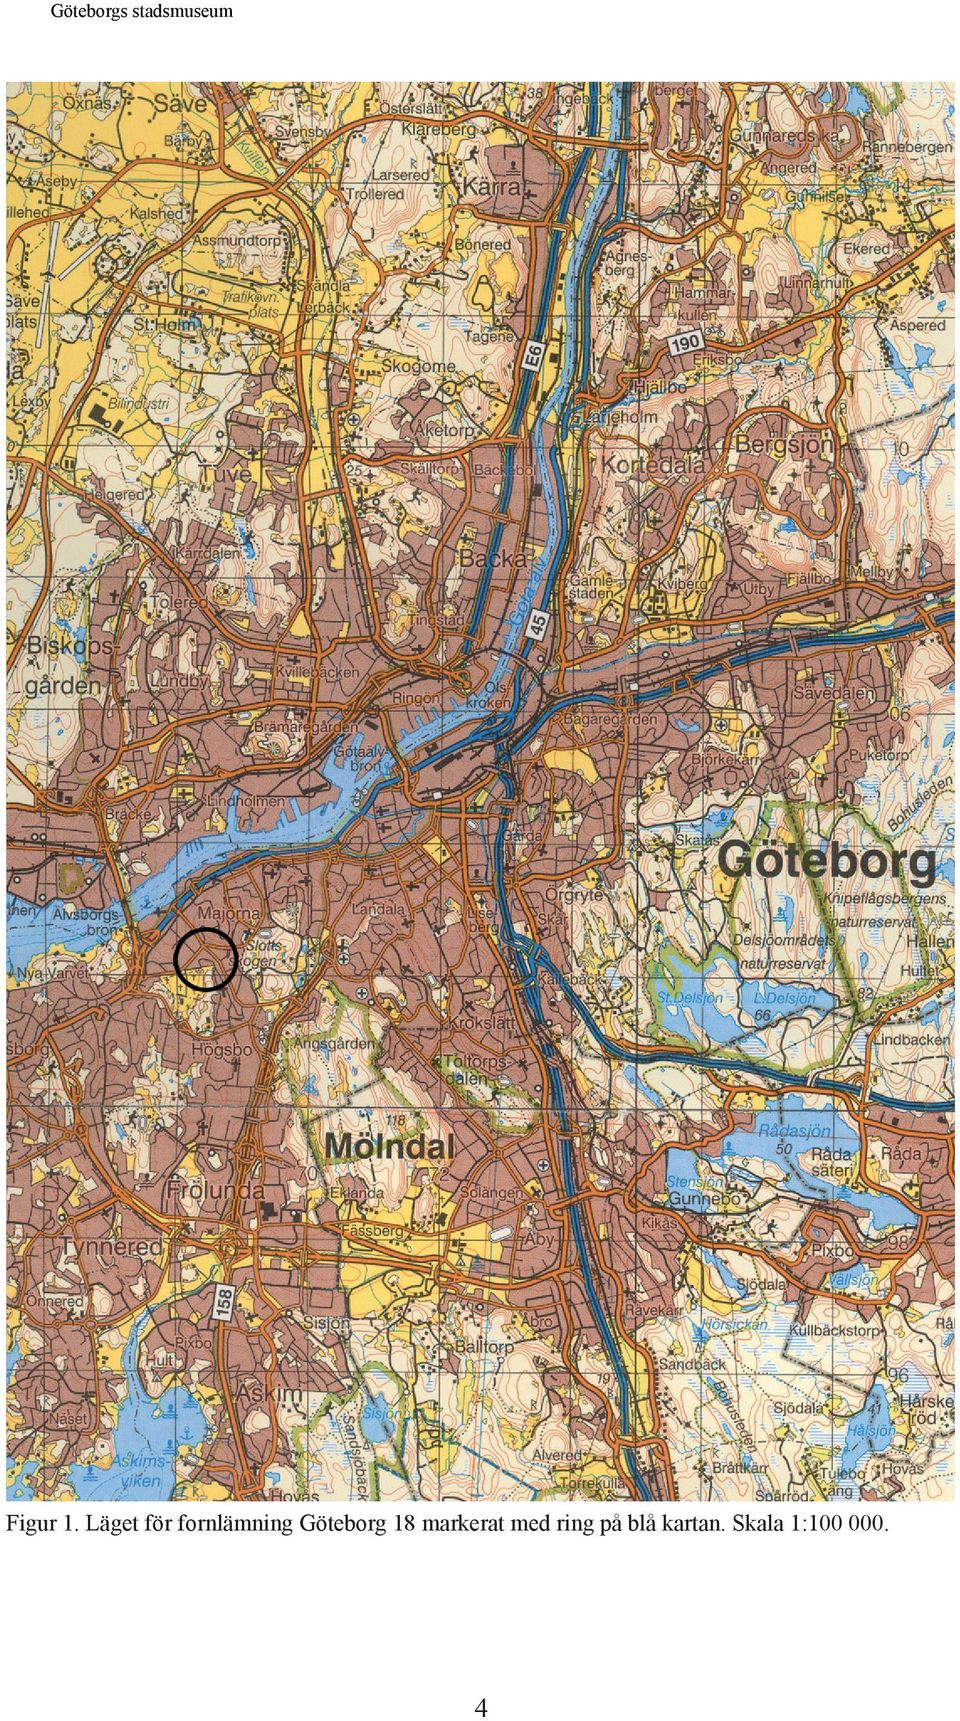 Göteborg 18 markerat med